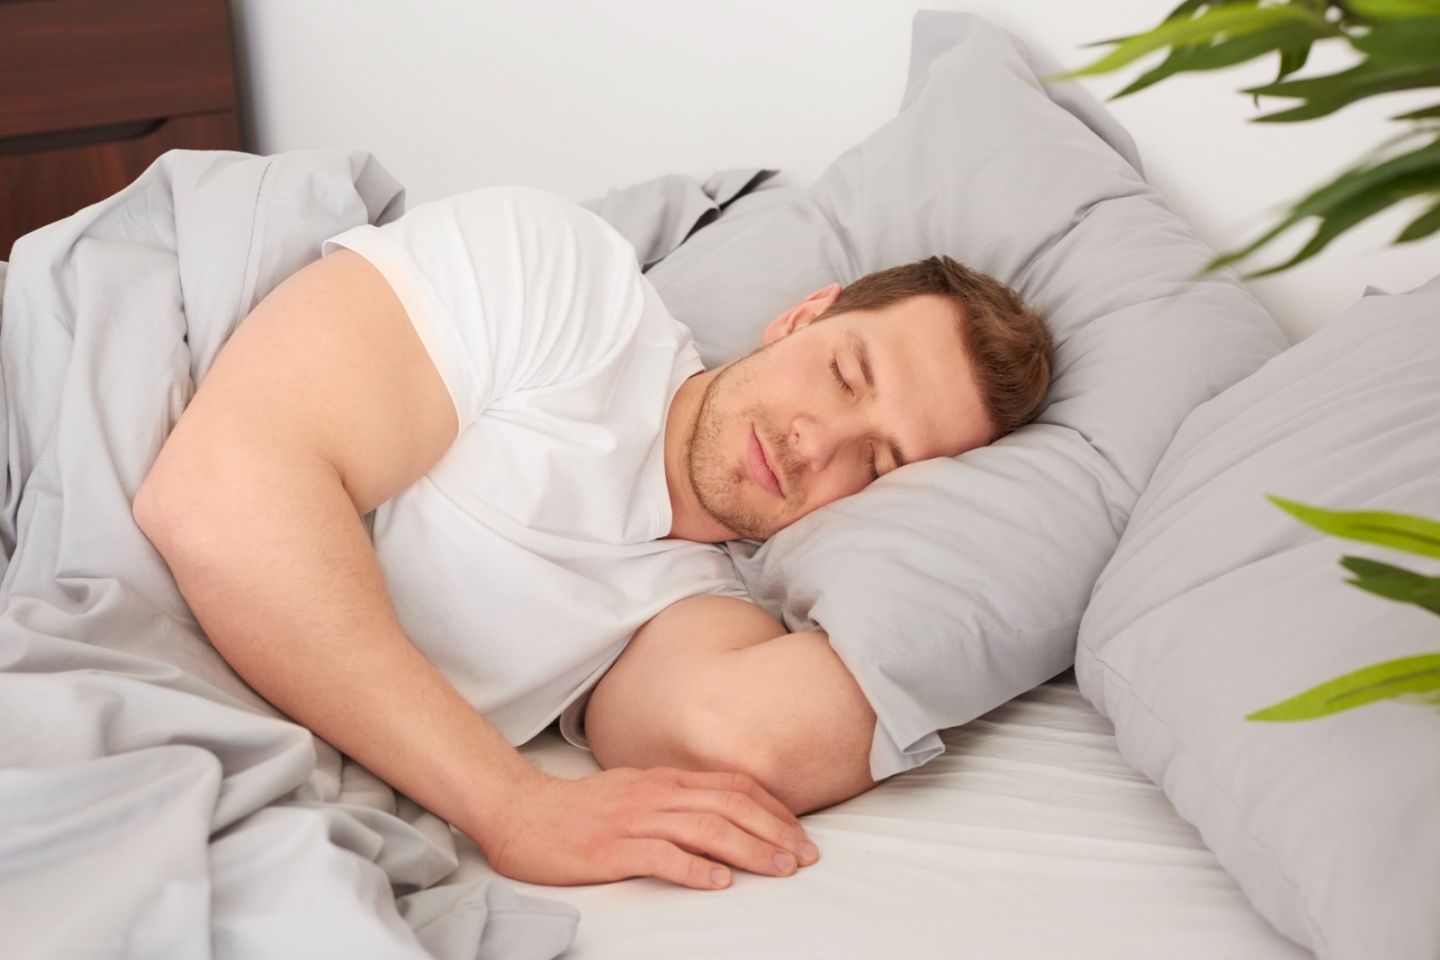 El sueño y la salud: dormir bien es clave para la salud física y mental